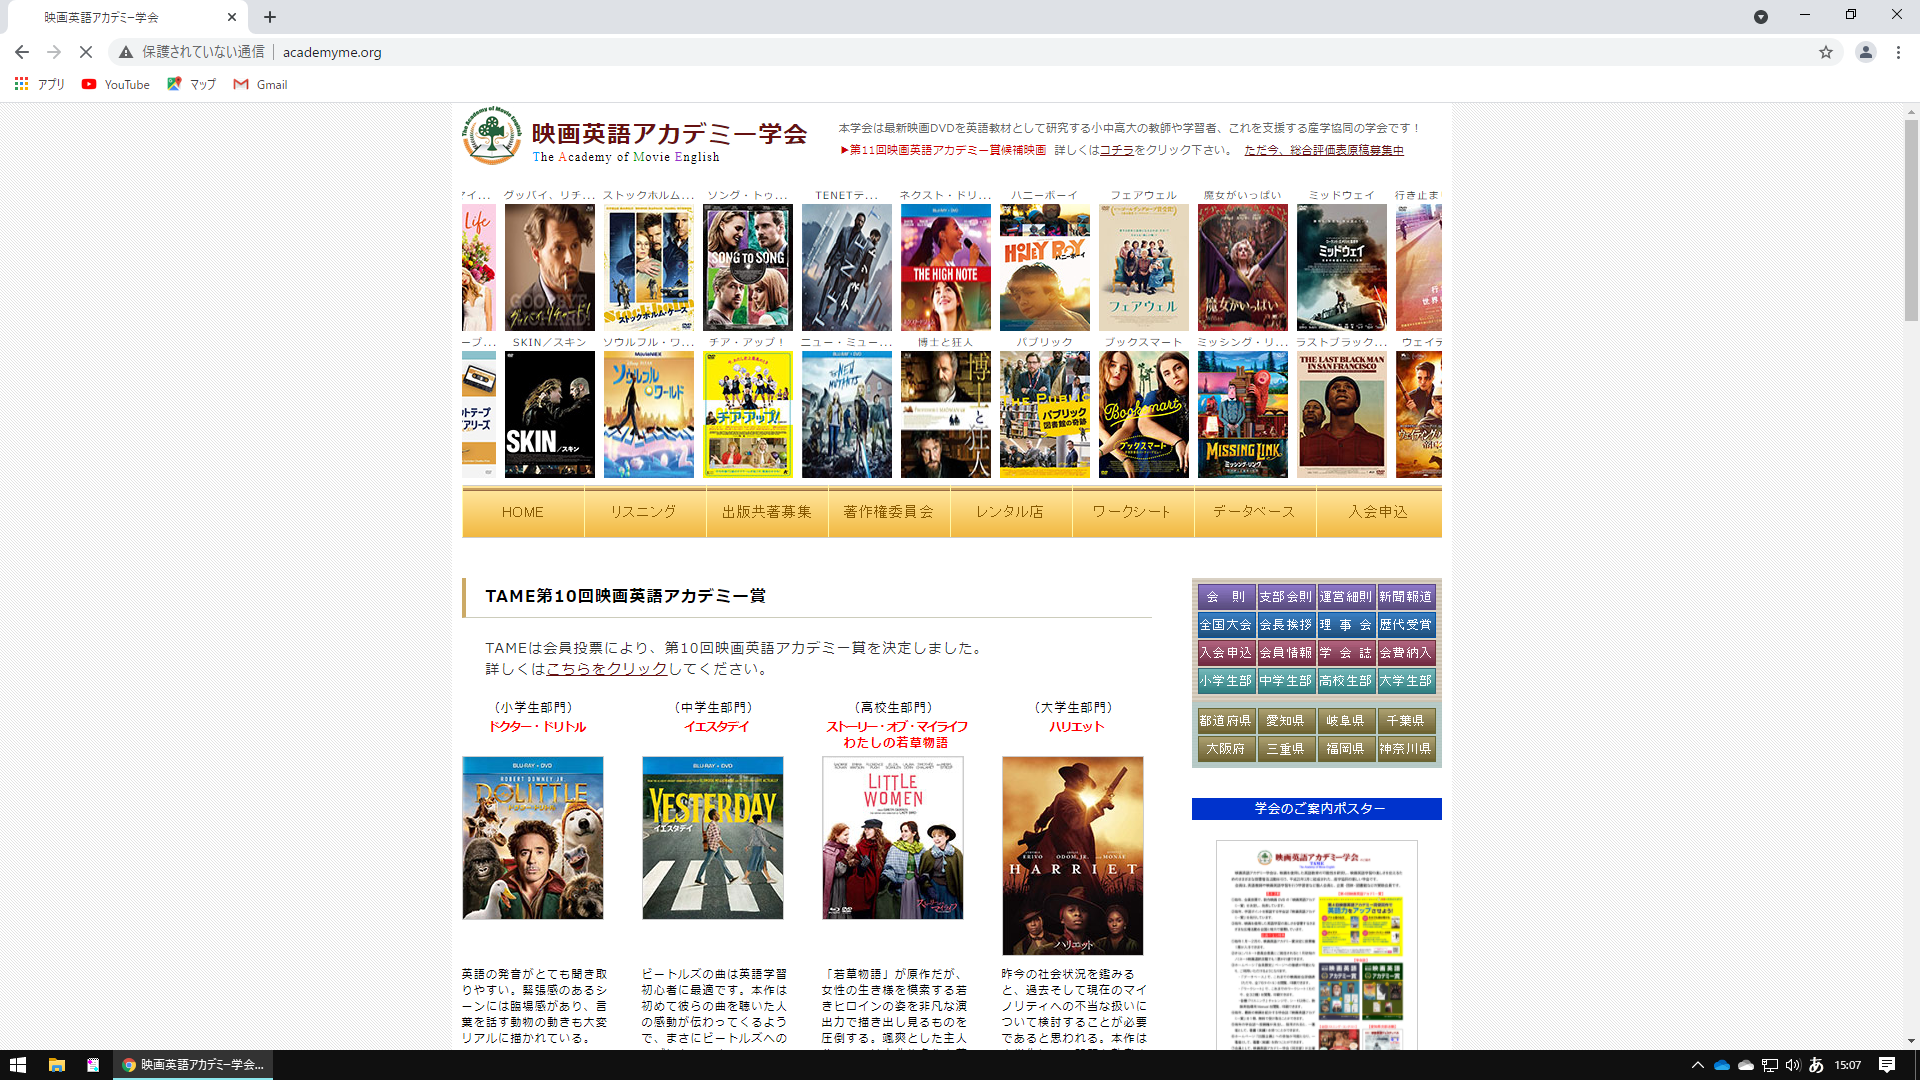 TAME 映画英語アカデミー学会のホームページ画像